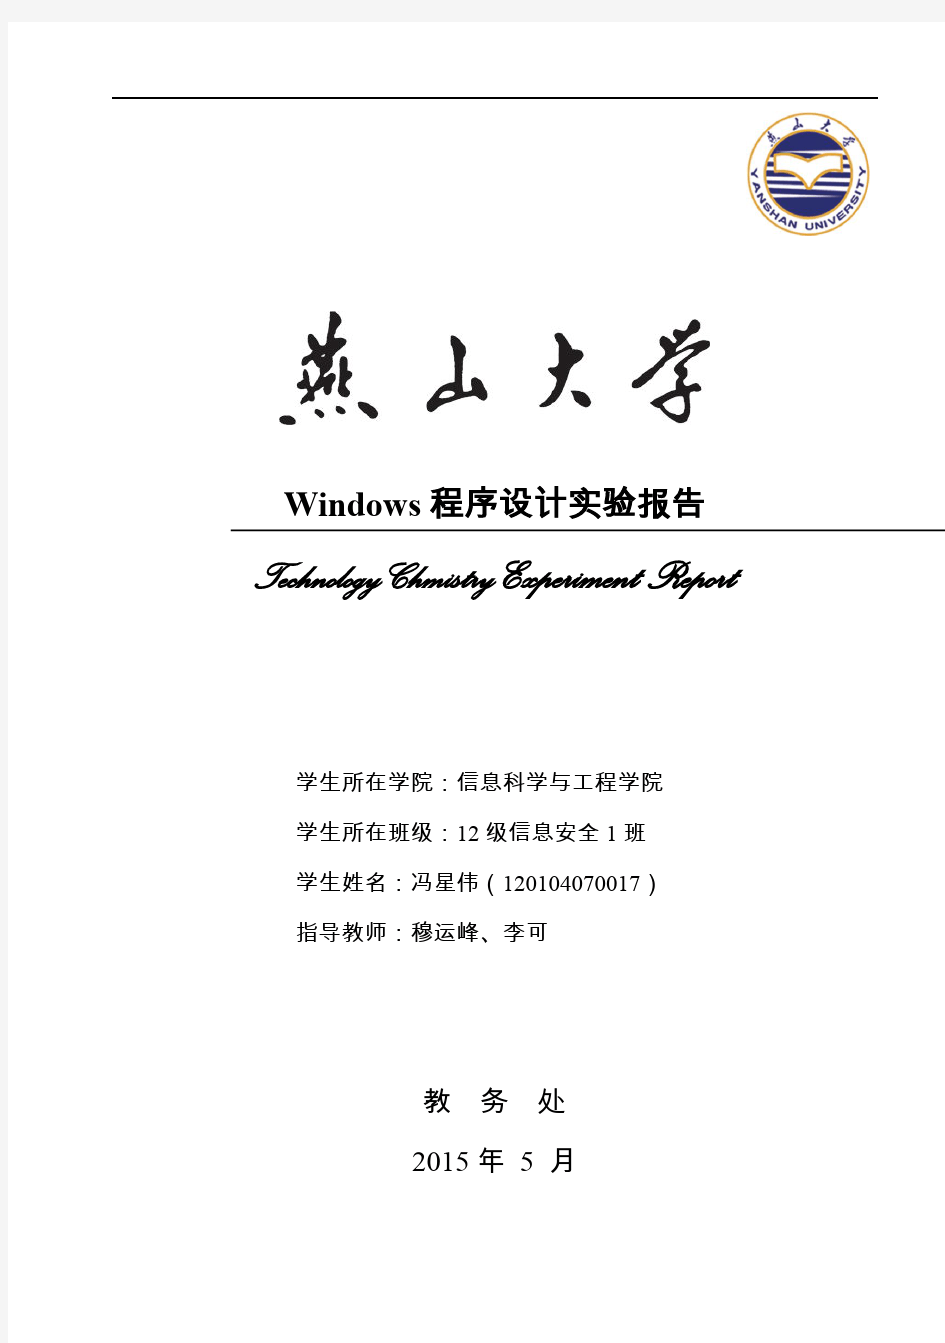 燕山大学Windows程序设计实验报告